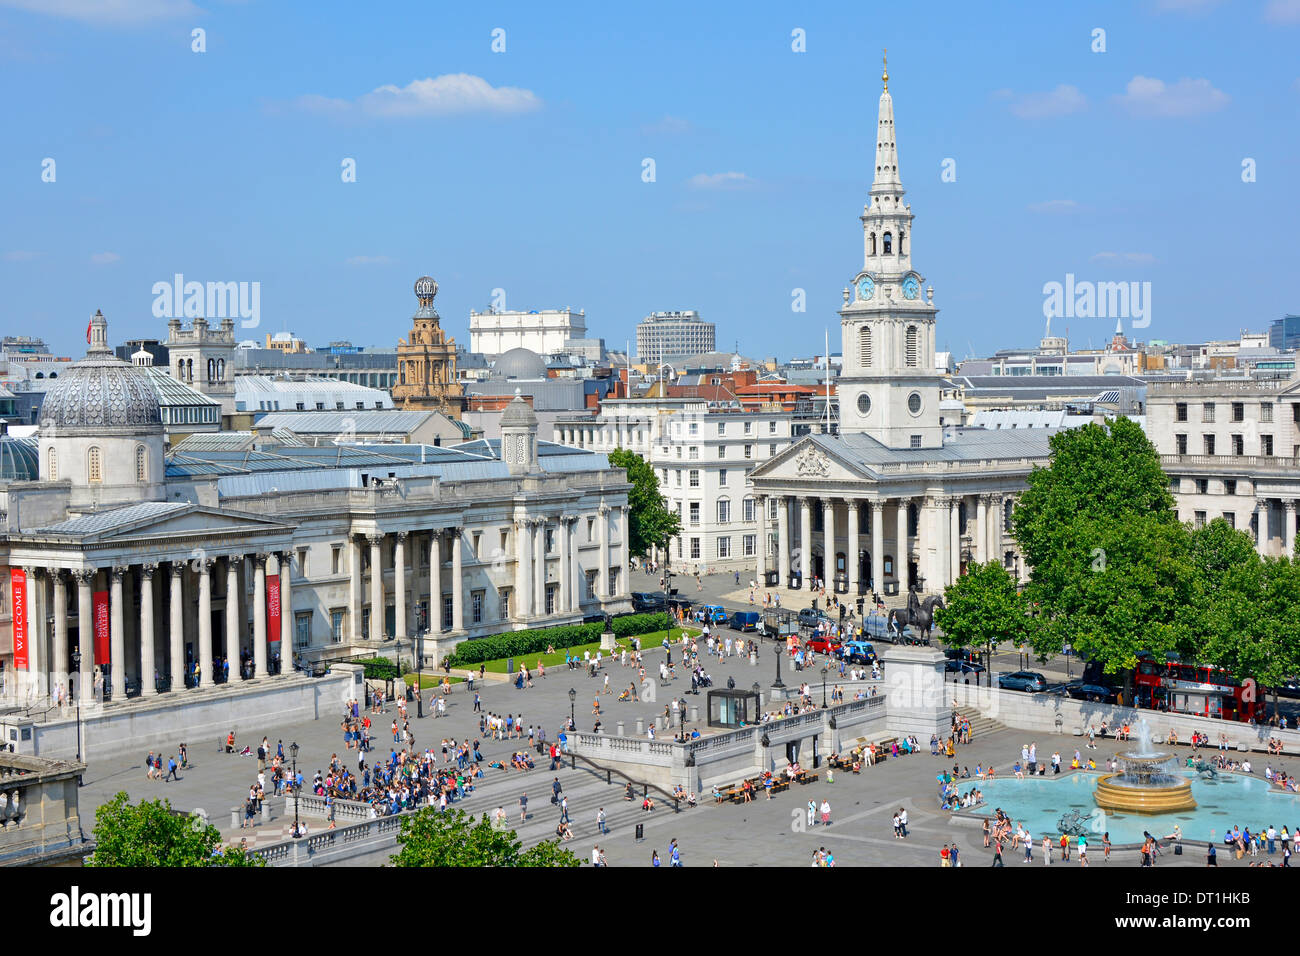 Vista aerea di turisti e persone, giorno blu cielo a Trafalgar Square, comprende la guglia colonnata della National Gallery di St Martin in the Fields Londra Inghilterra Regno Unito Foto Stock